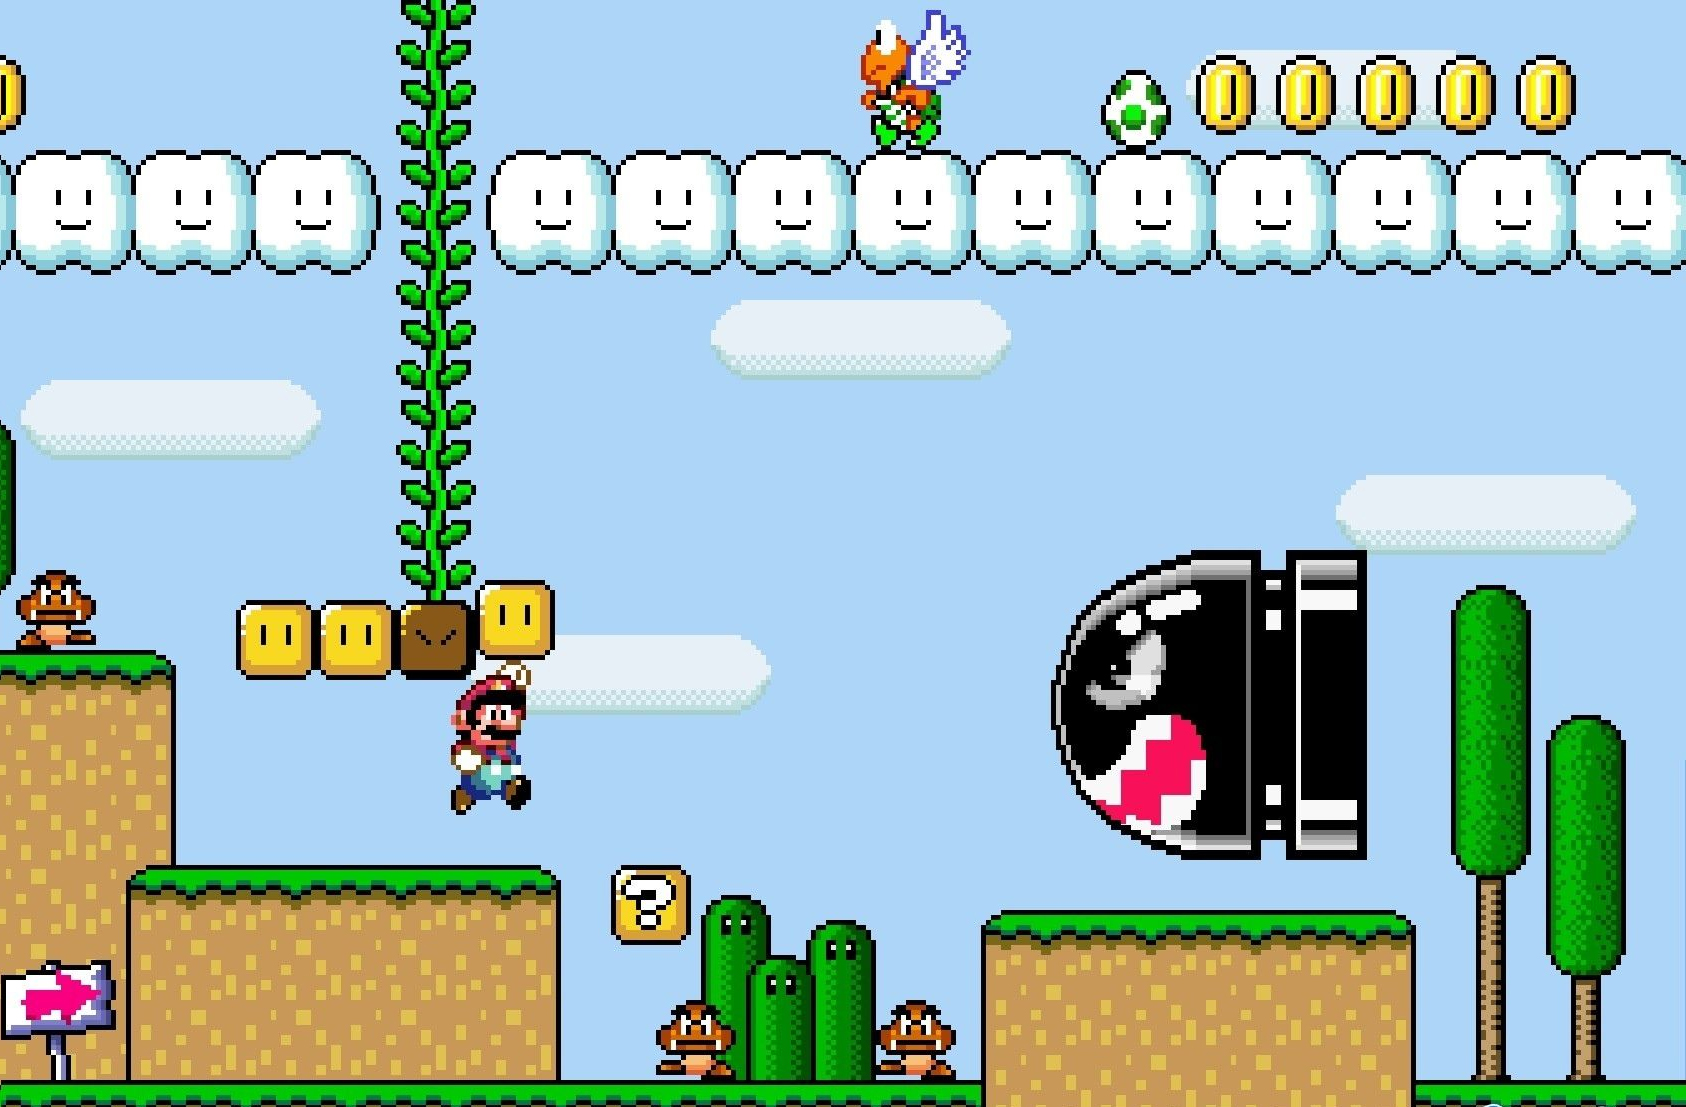 Trò chơi Mario đã trở lại với các nhiệm vụ mới thú vị hơn bao giờ hết! Trong trò chơi này, bạn sẽ được đóng vai nhân vật Mario đi tìm cứu công chúa Peach khỏi tay Bowser. Đến với ảnh liên quan đến trò chơi này để khám phá thế giới mới của Mario nhé!